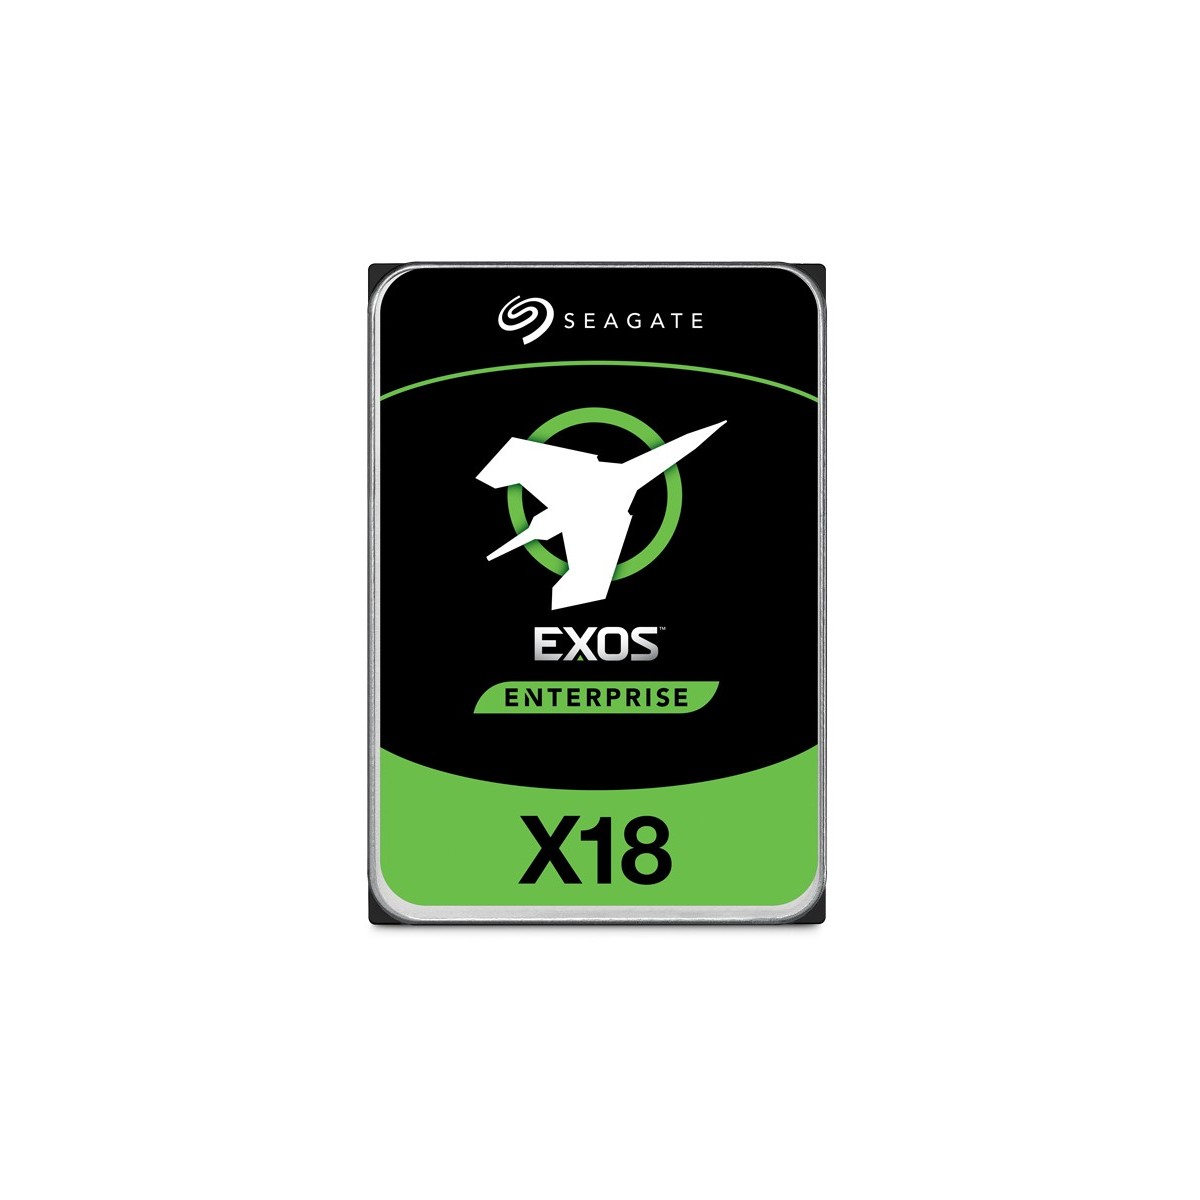 Seagate ENTERPRISE C EXOS X18 14TB 3.5IN 7200RPM SAS HELIUM 512E - Serial Attached SCSI (SAS) - 14,000 GB